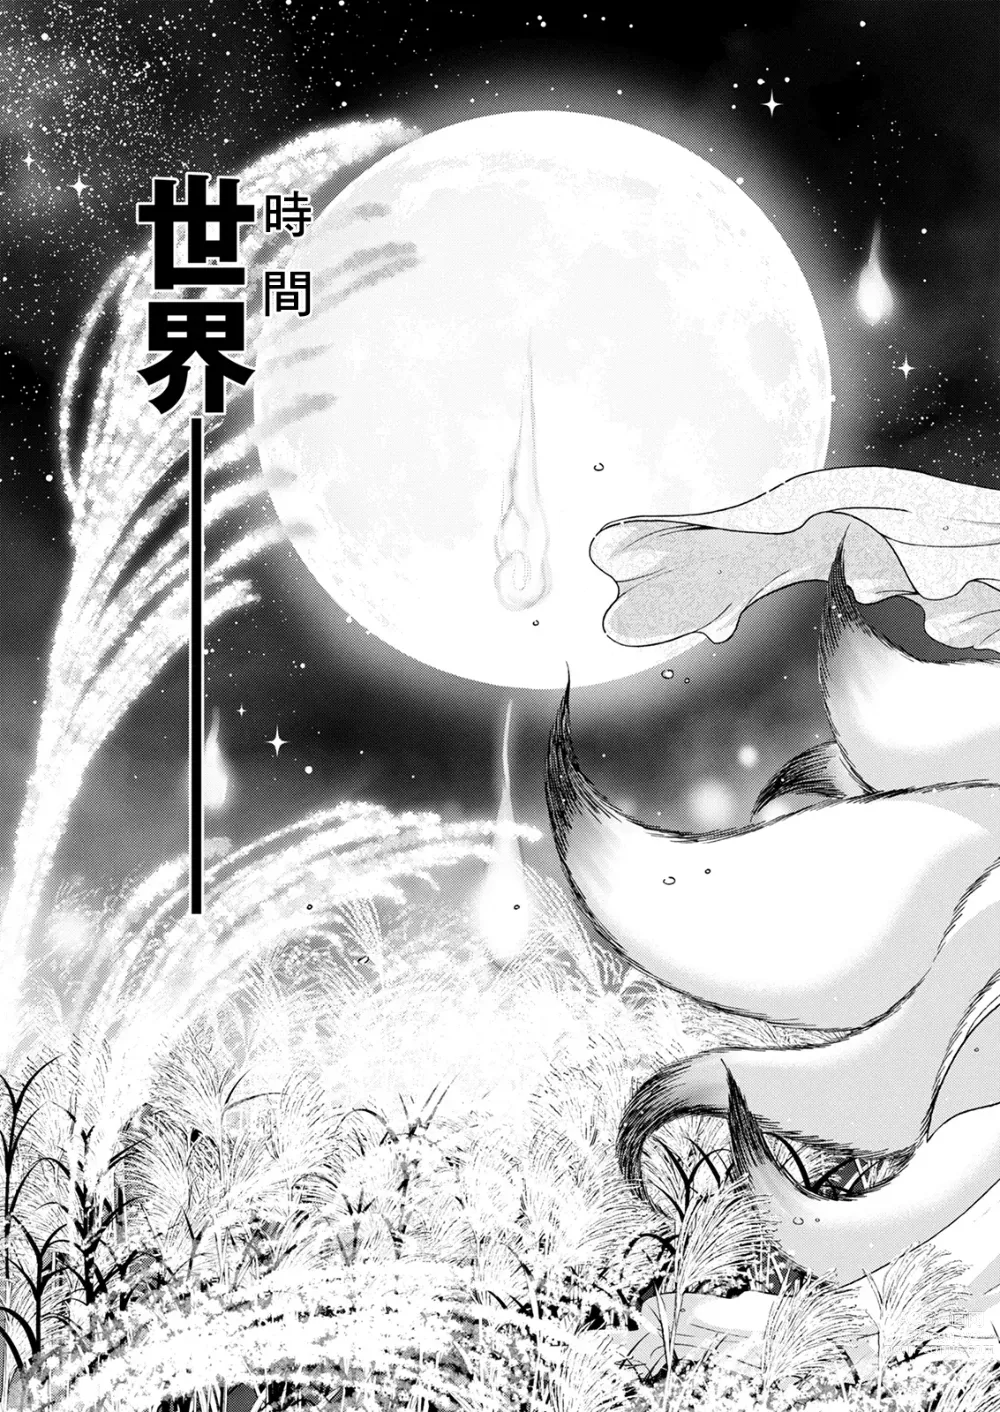 Page 3 of manga Youkai Ecchicchi Saishuuwa